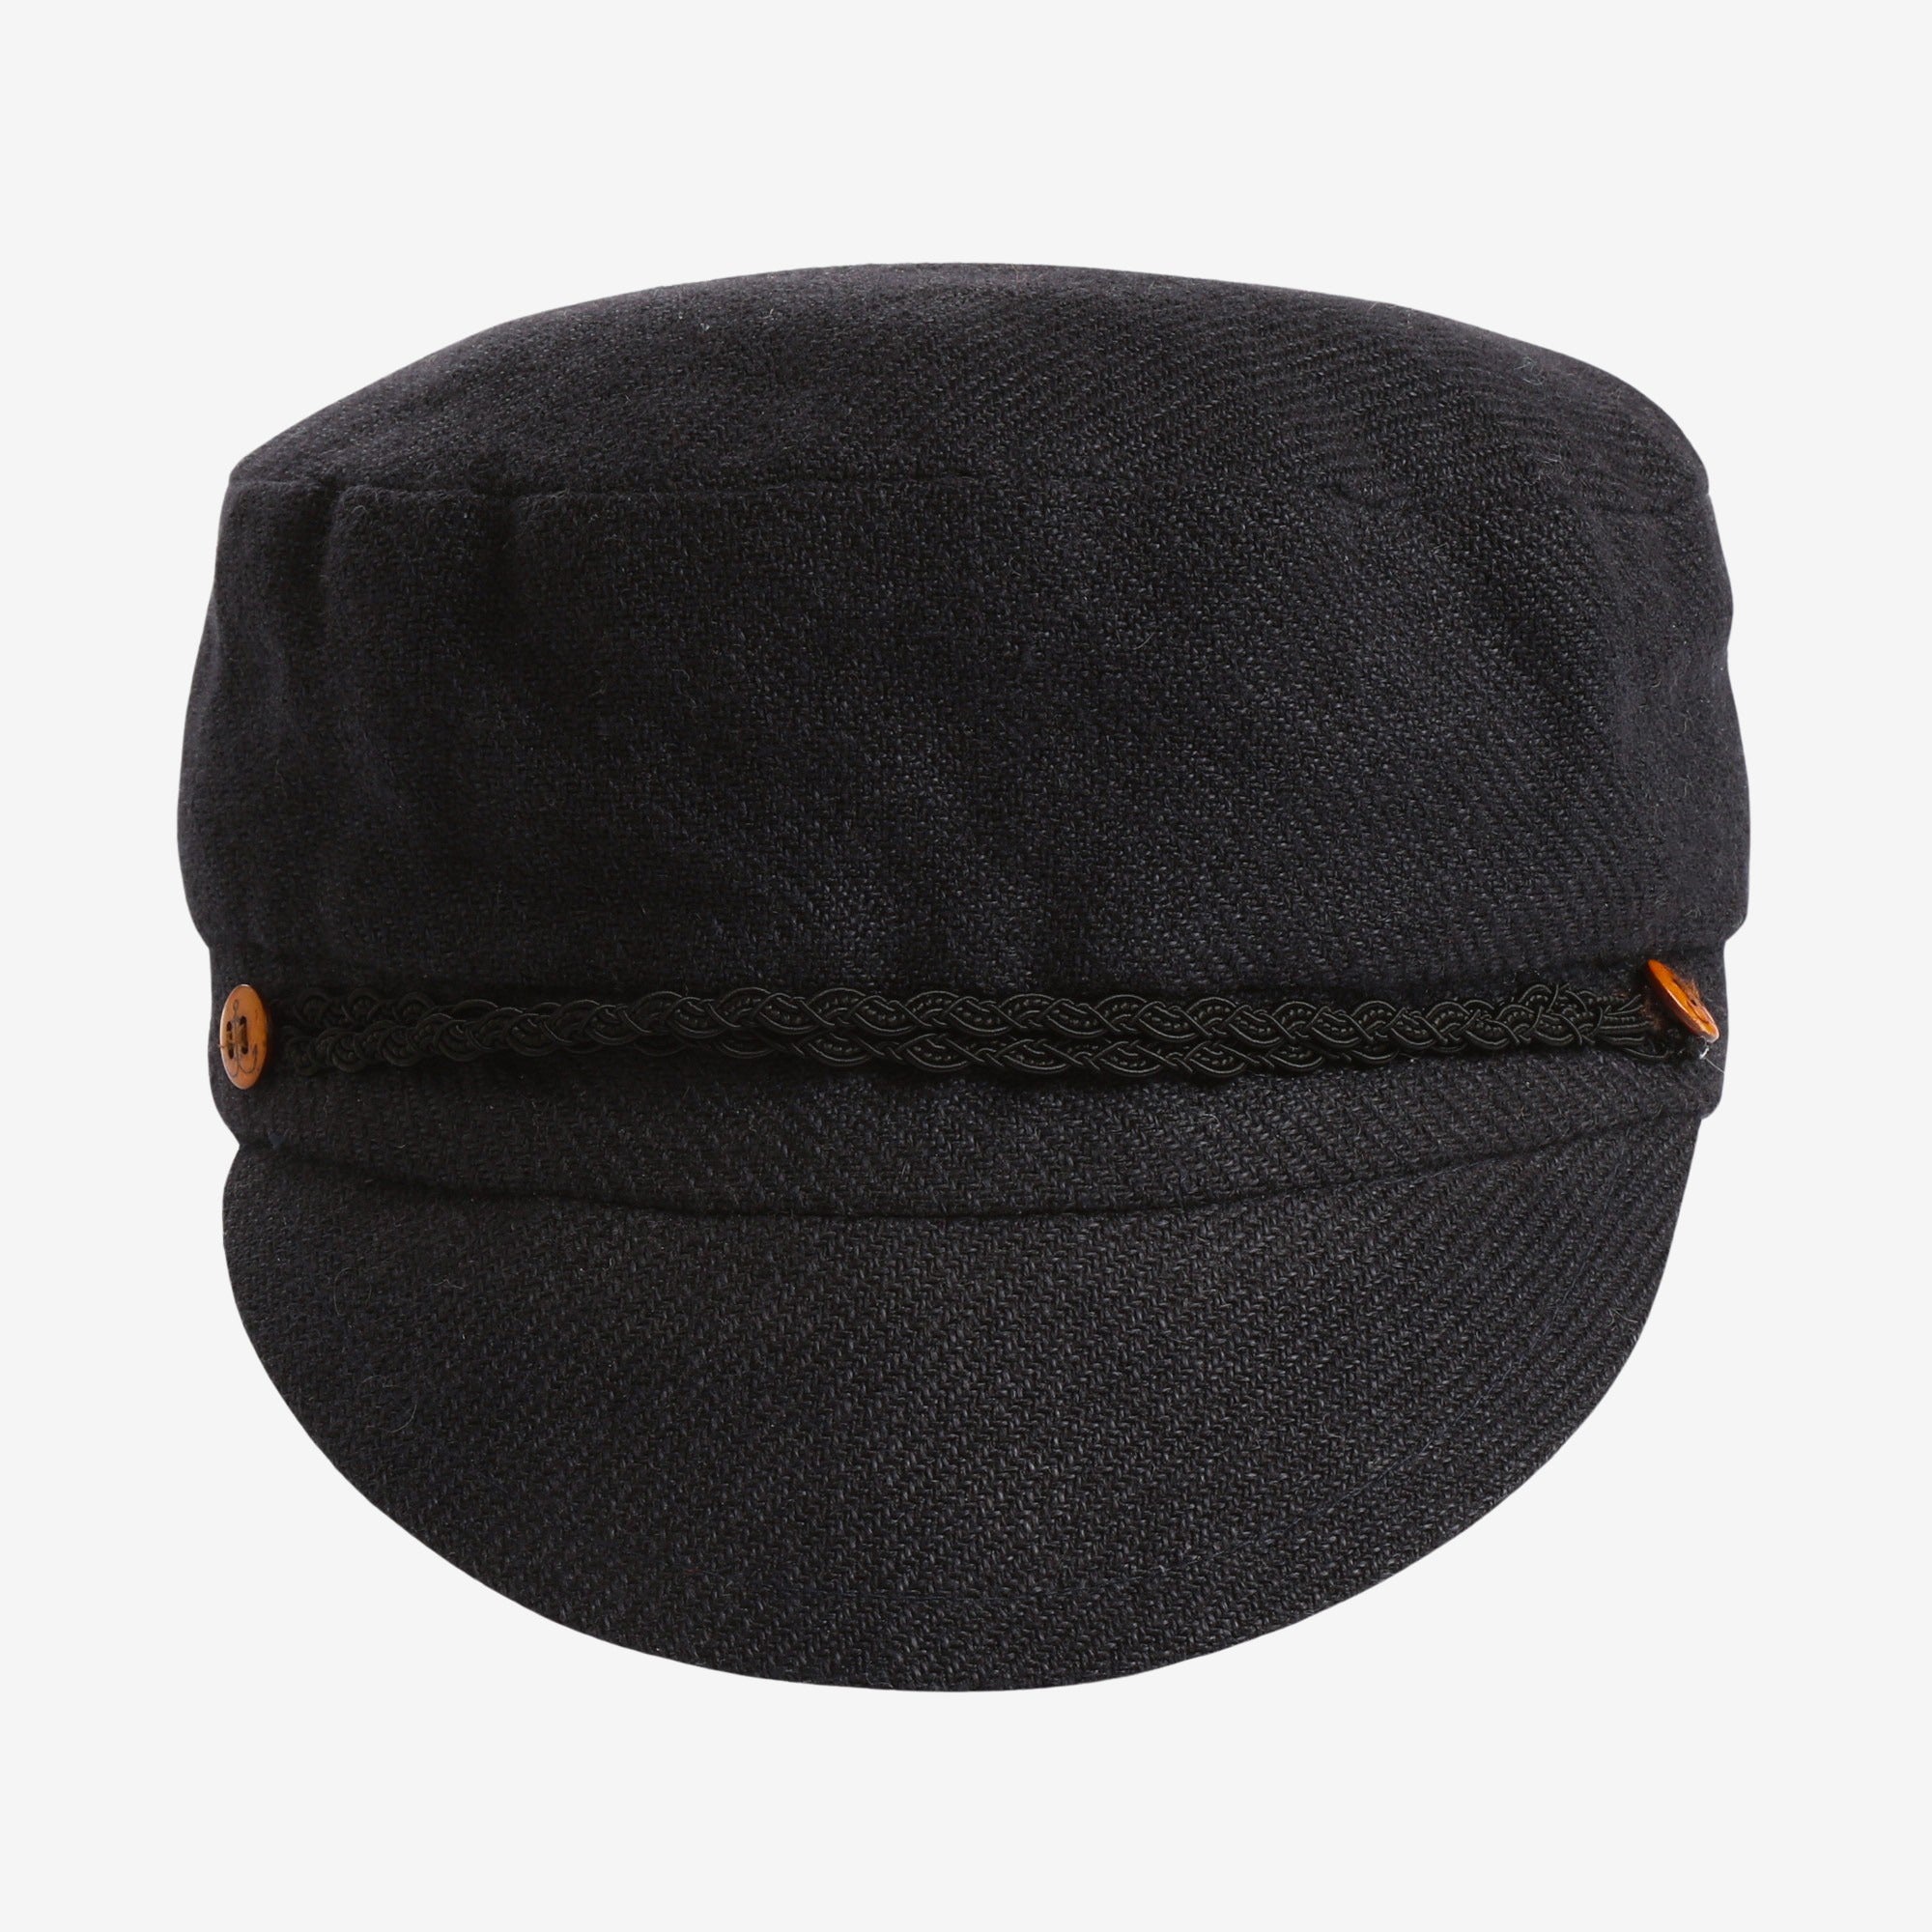 Wool Cap